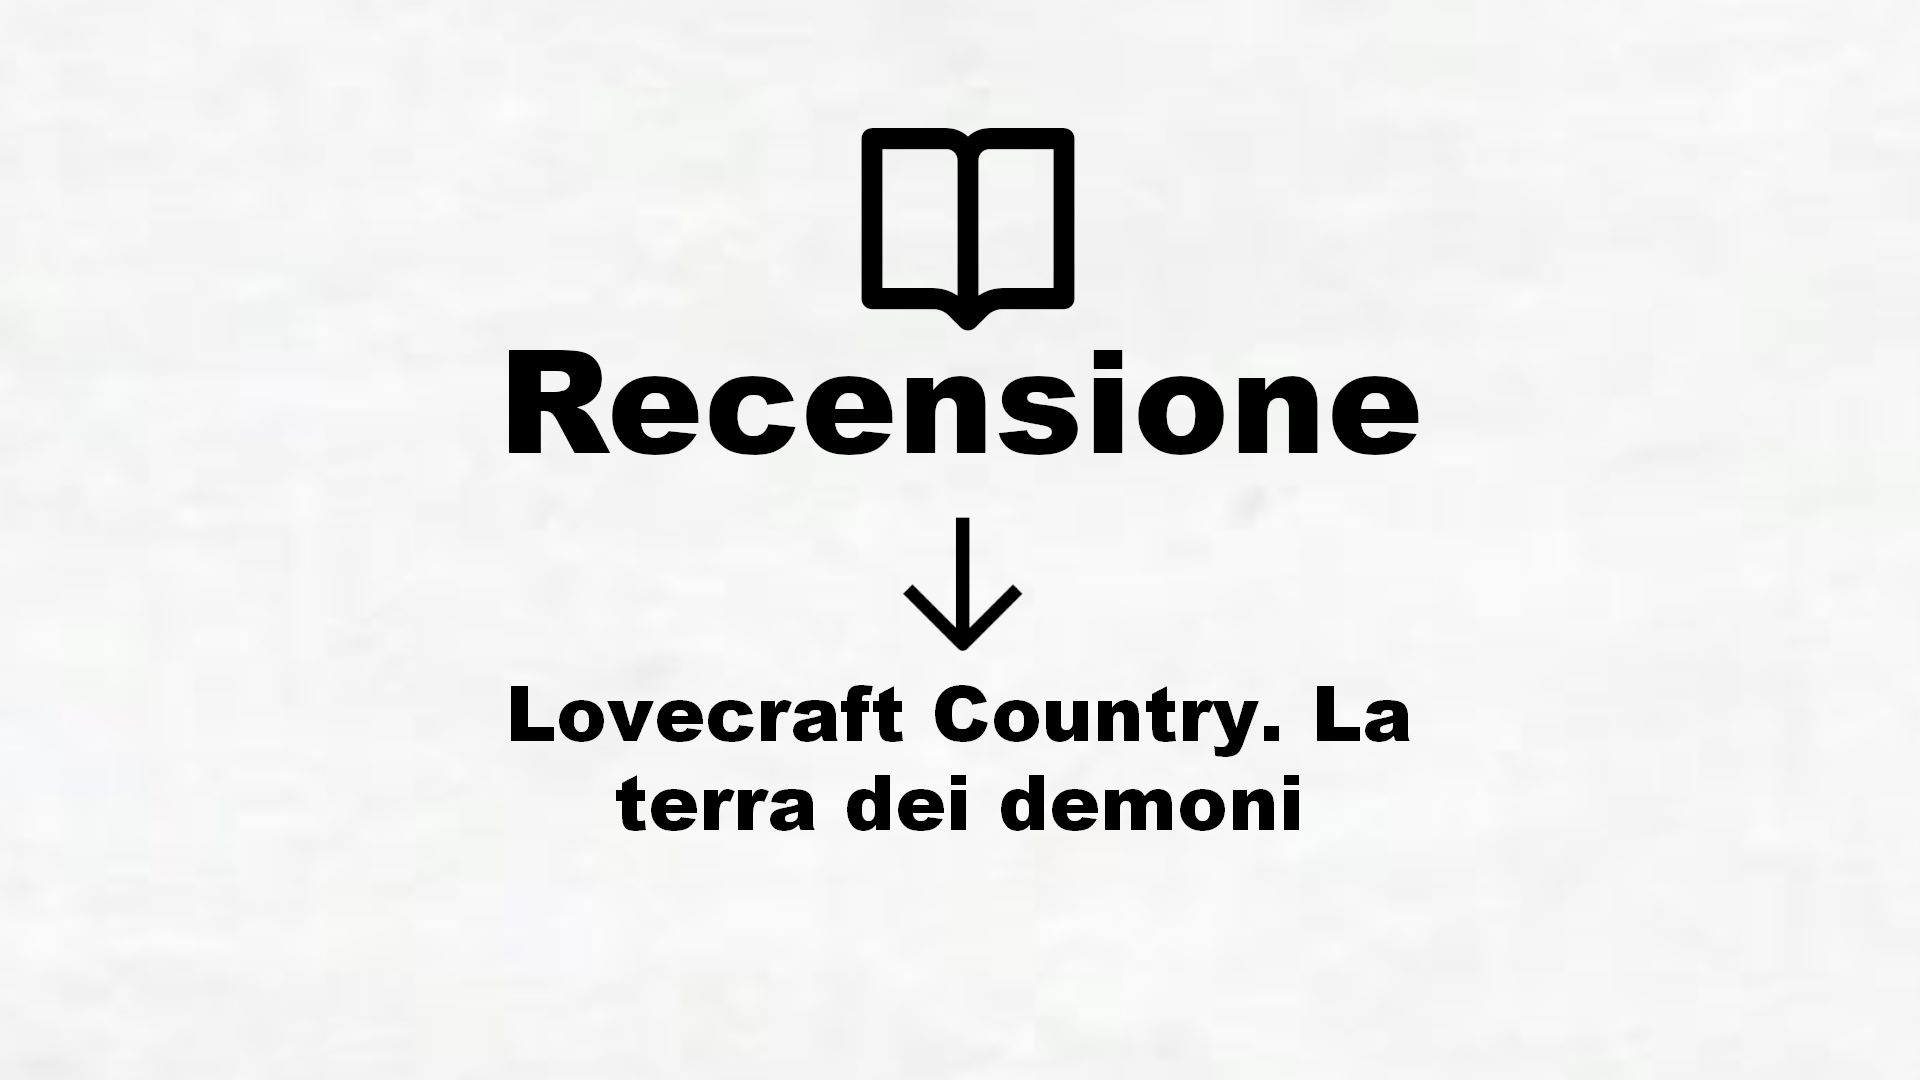 Lovecraft Country. La terra dei demoni – Recensione Libro